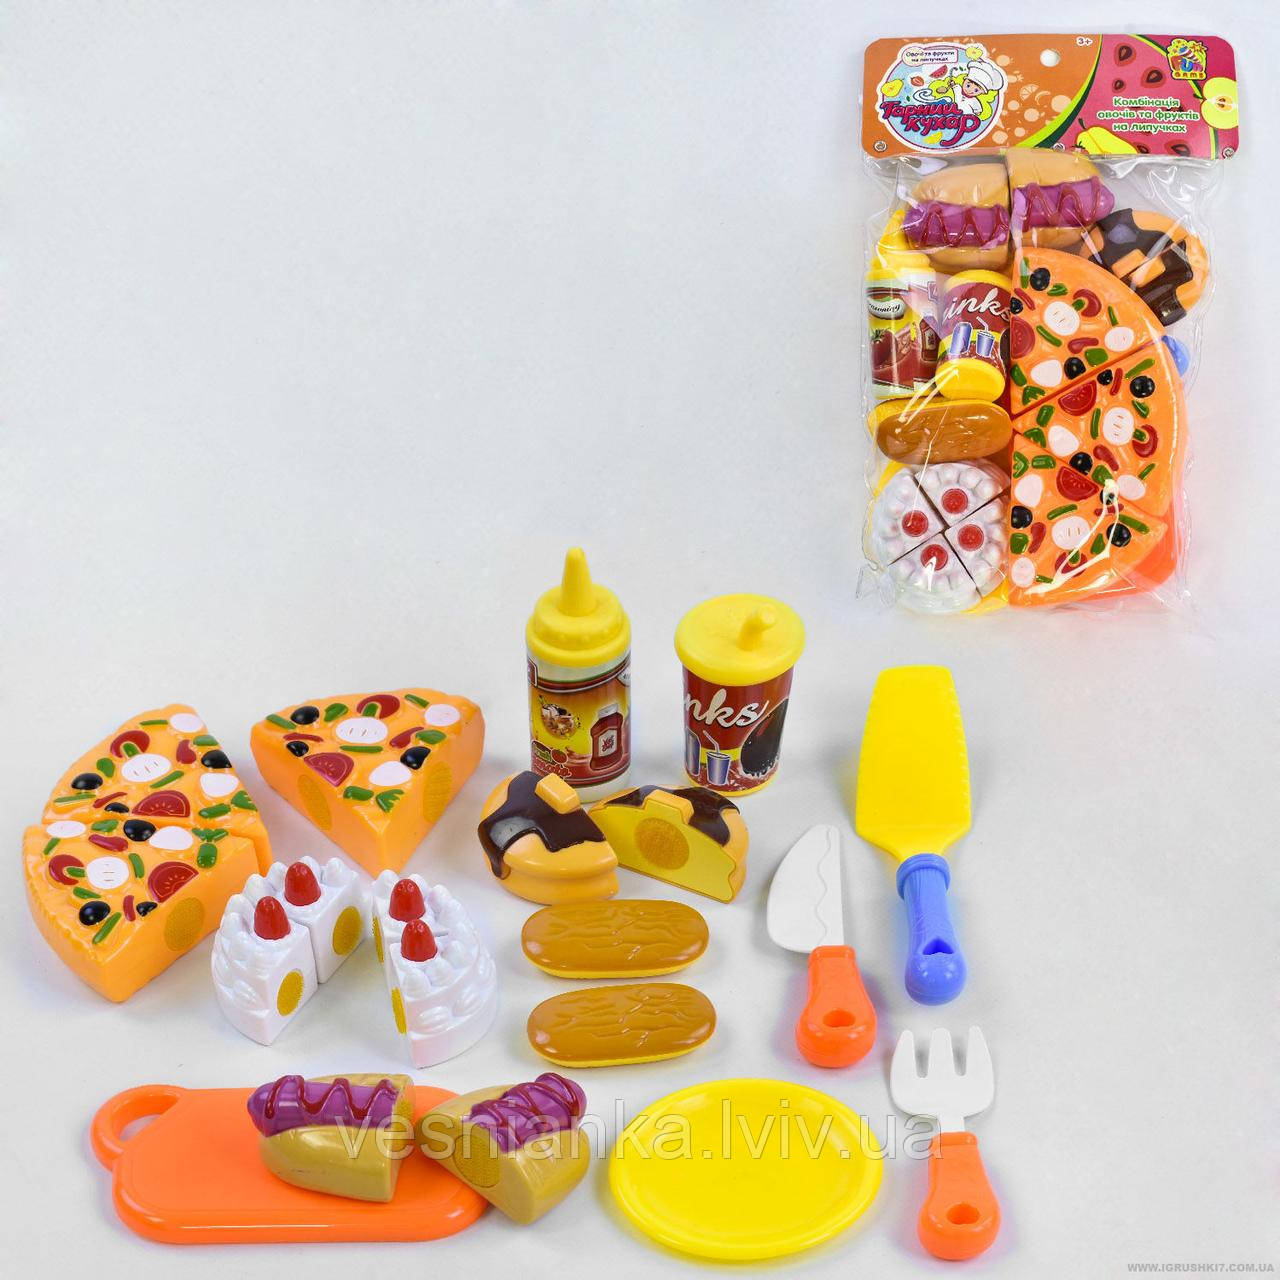 Іграшка Набір продуктів на липучках, 12 предметів, арт 1029